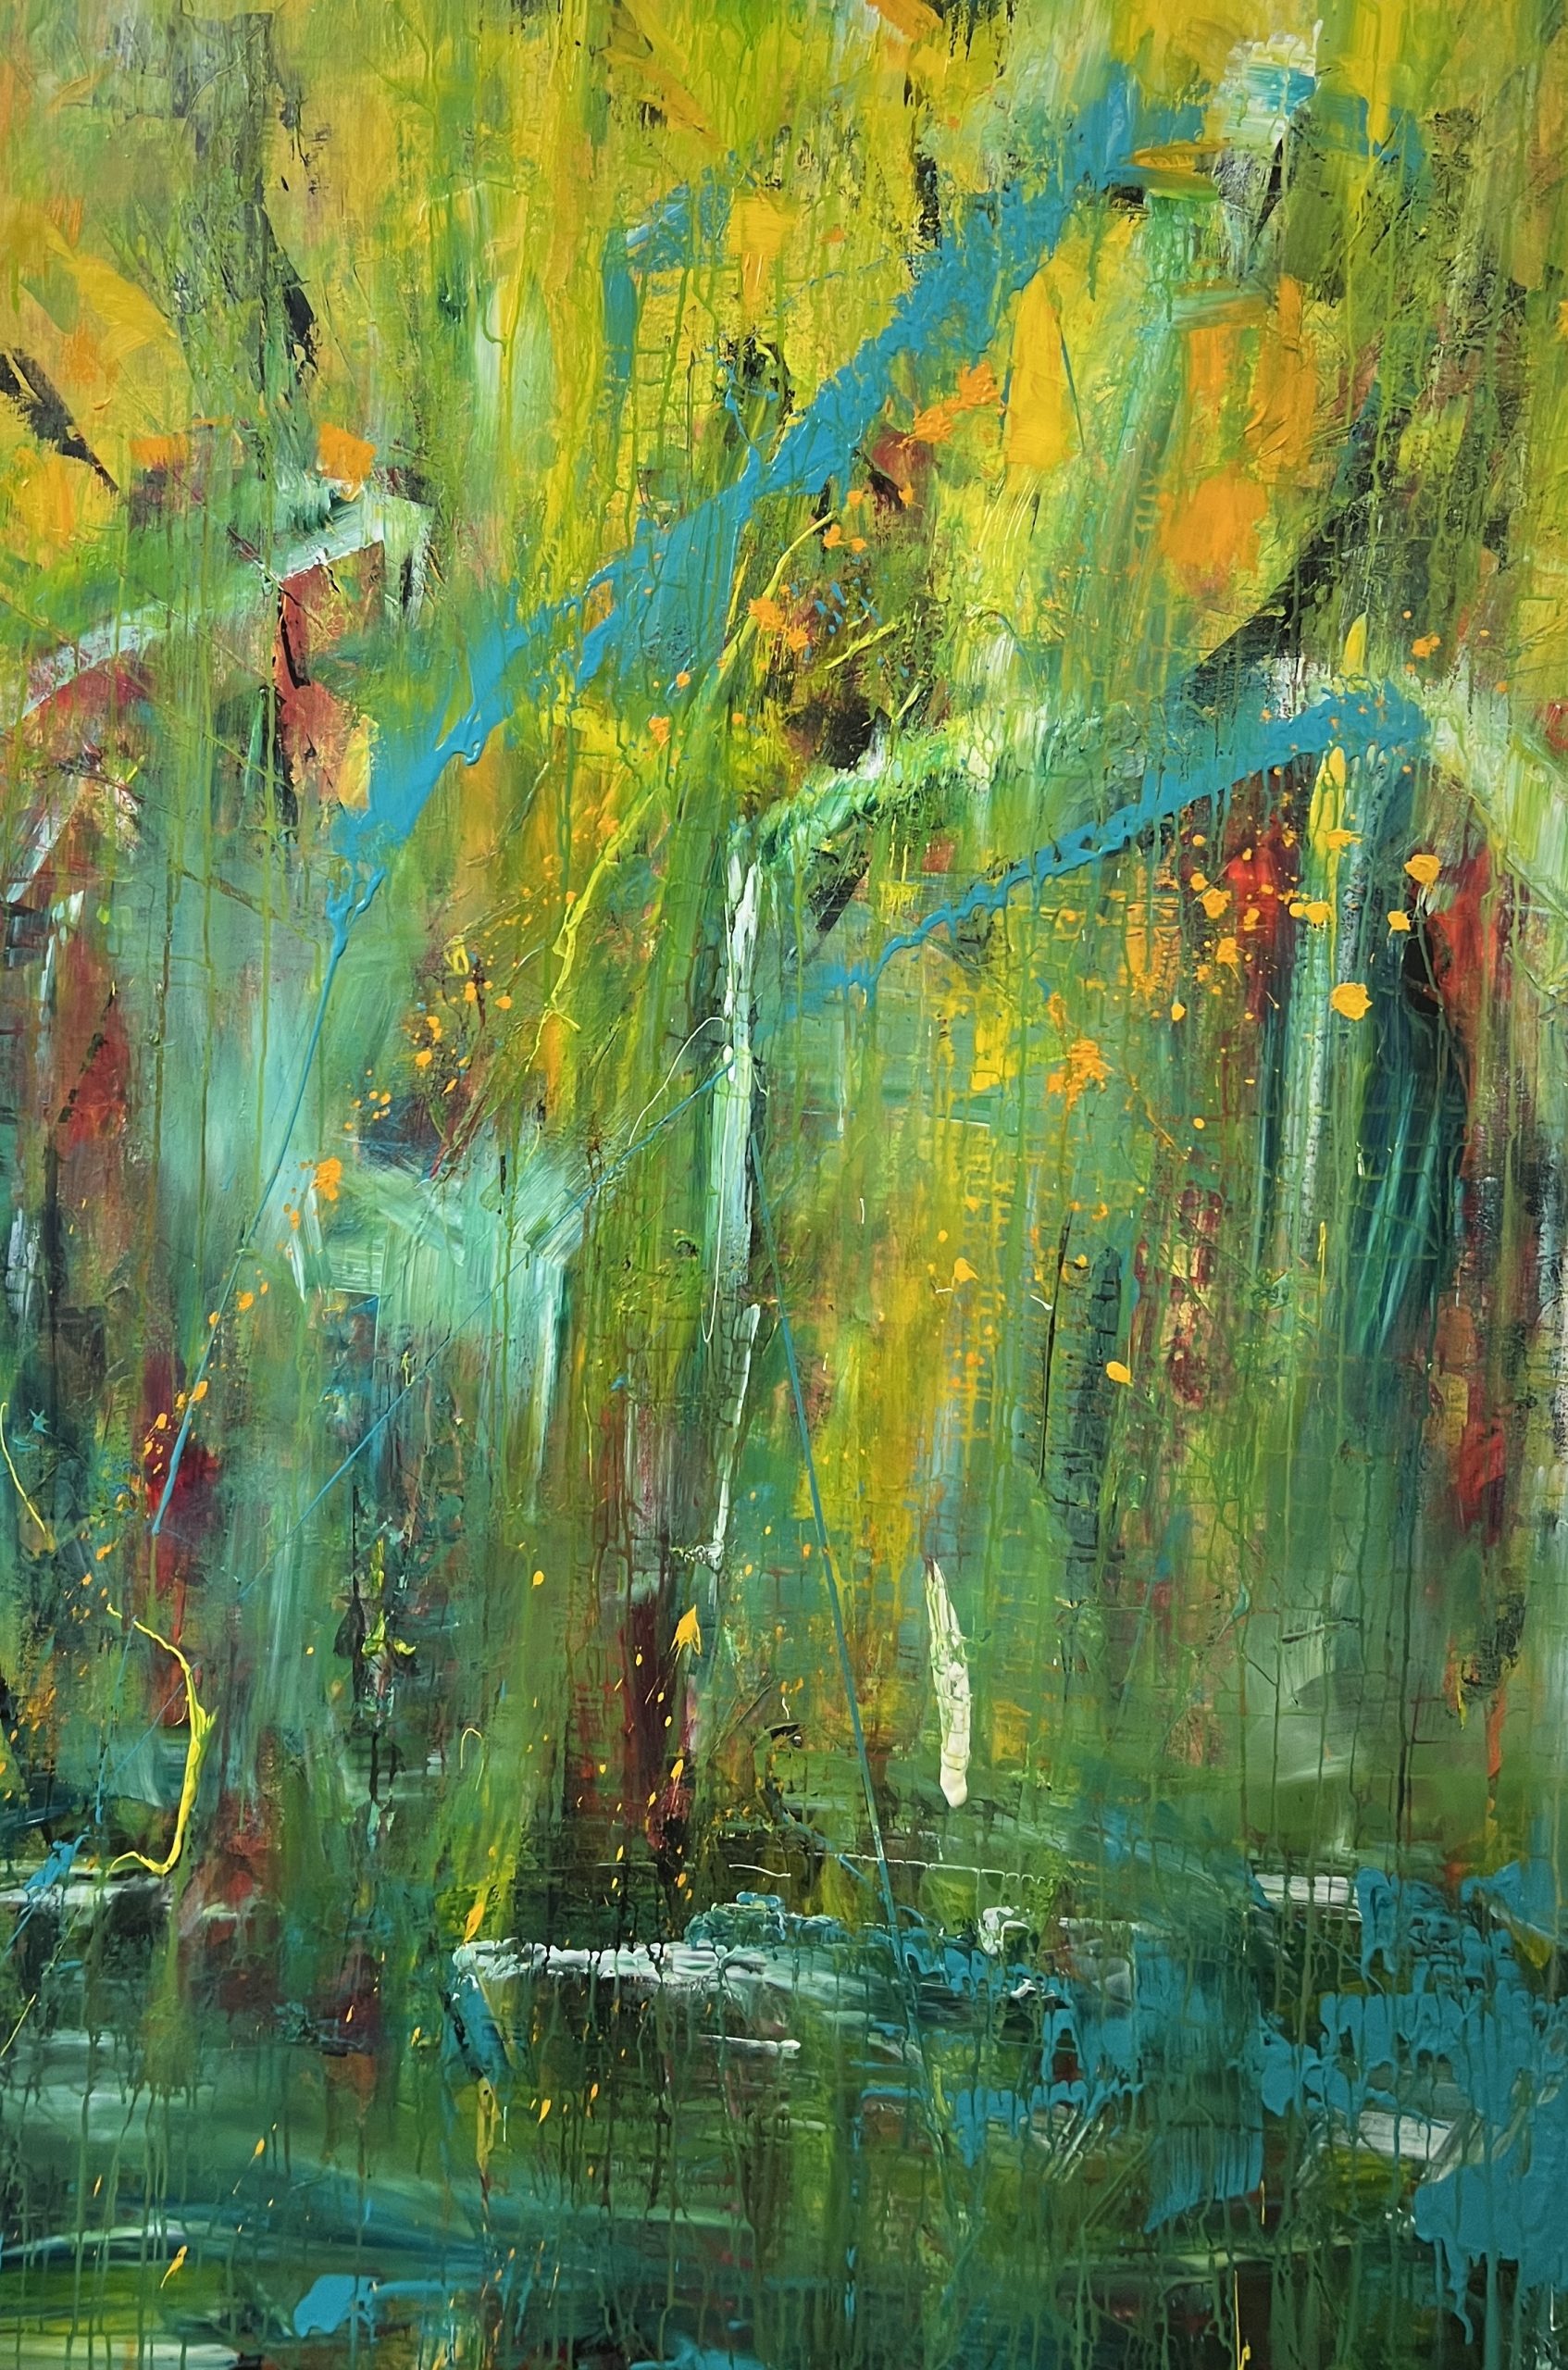 Masser af dynamik i dette smukke farverige maleri , hvor man fornemmer vand, træer - og måske fugle.